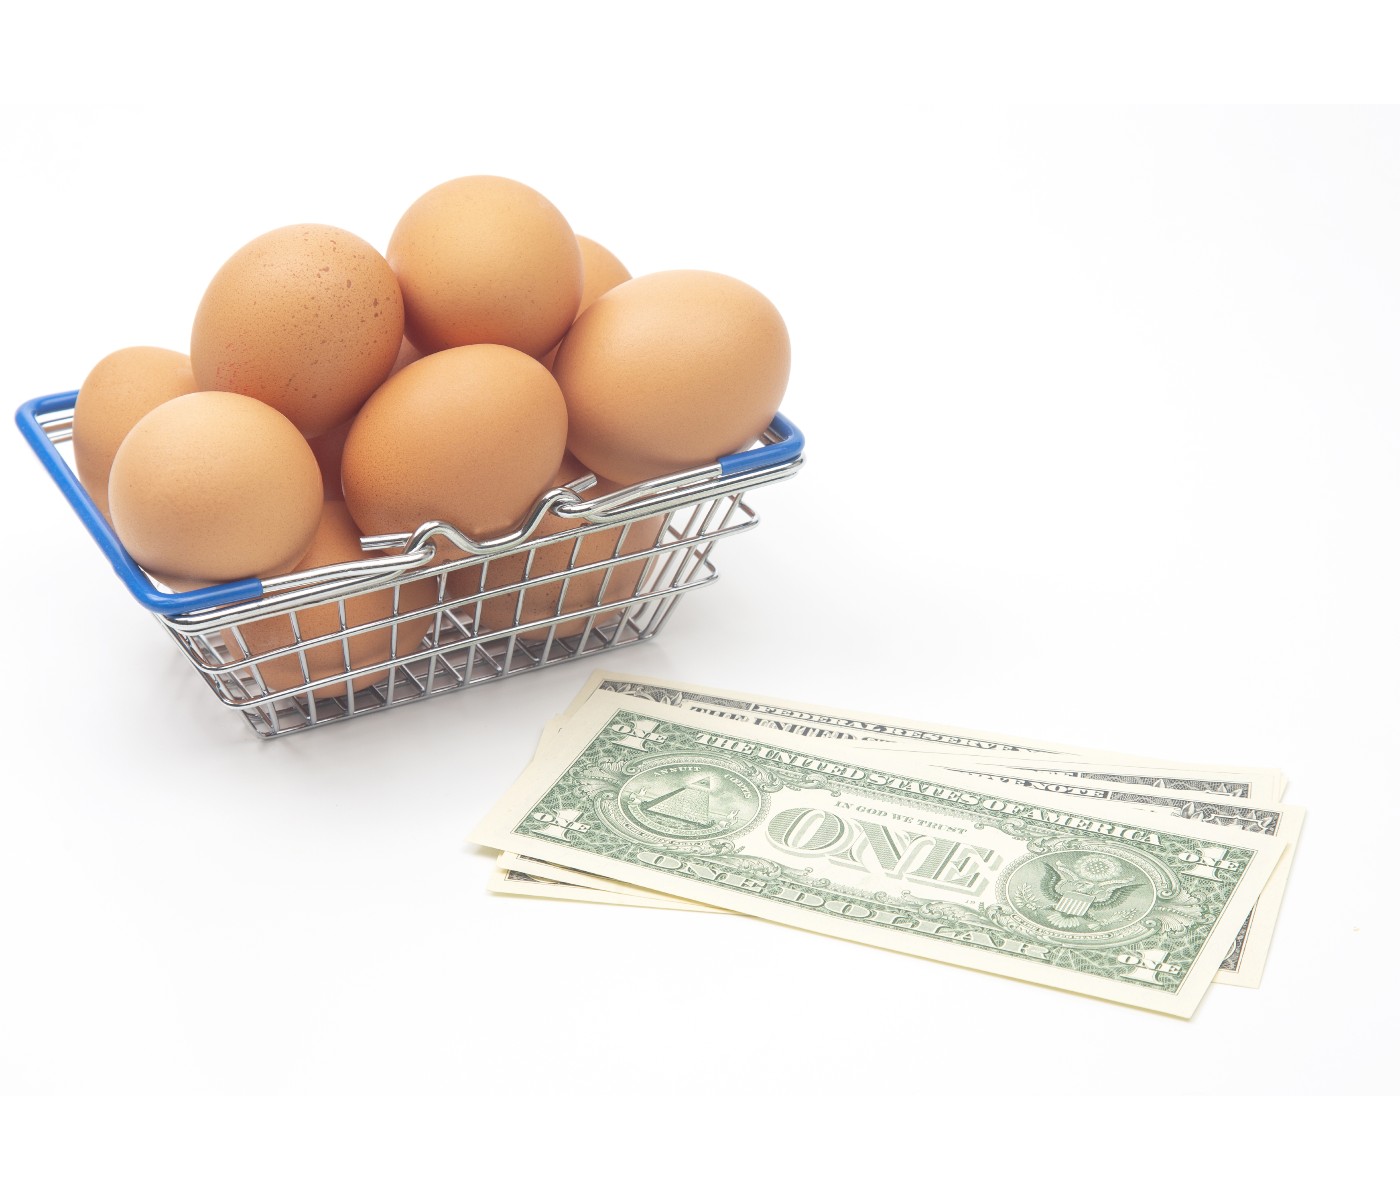 EE.UU.: Incremento del precio de los huevos está vinculado a la Influenza Aviar H5N1